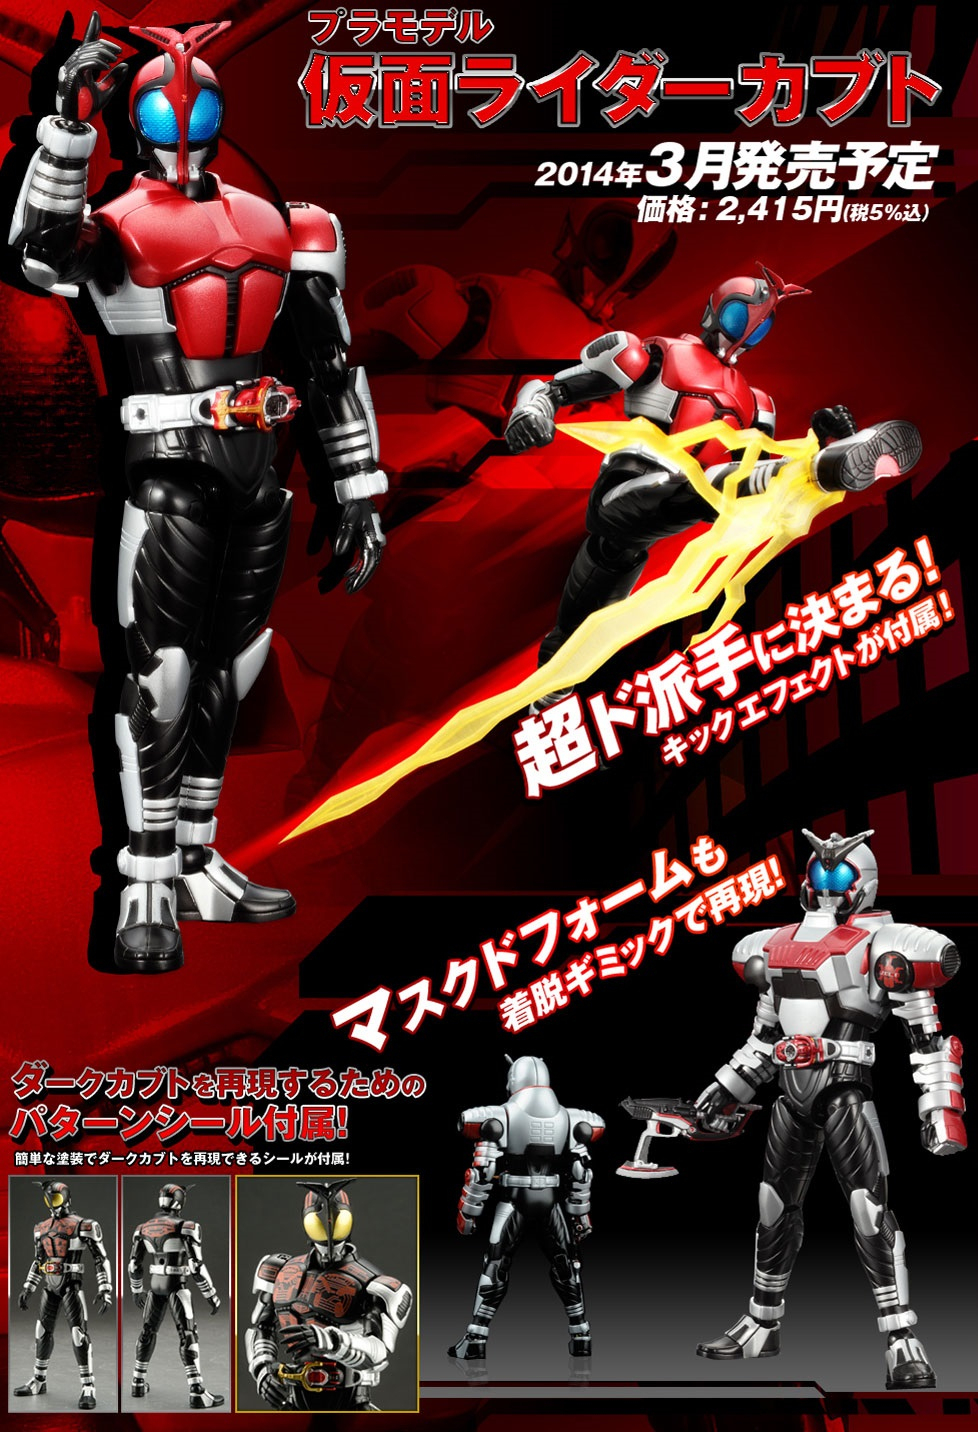 Figrerise 6 Kamen Rider Kabuto And Kamen Rider Faiz New avec Kamen Rider Faiz 